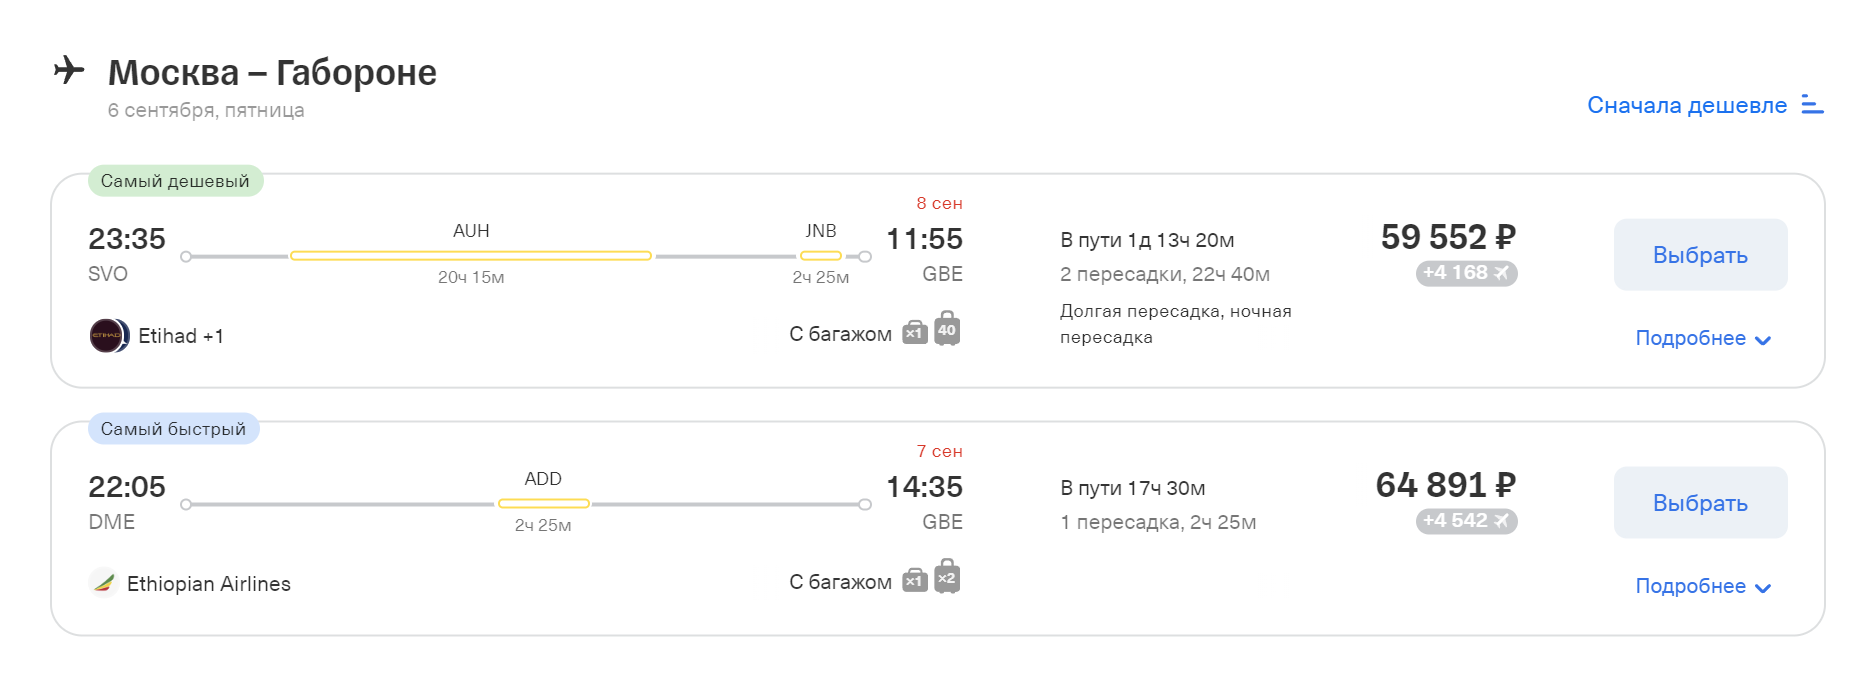 Лететь из Москвы в Габороне или дорого, или дорого и неудобно — со сменой авиакомпании. Проще и дешевле добраться по воздуху до Йоханнесбурга, а там пересесть на автобус в столицу Ботсваны. Источник: tinkoff.ru